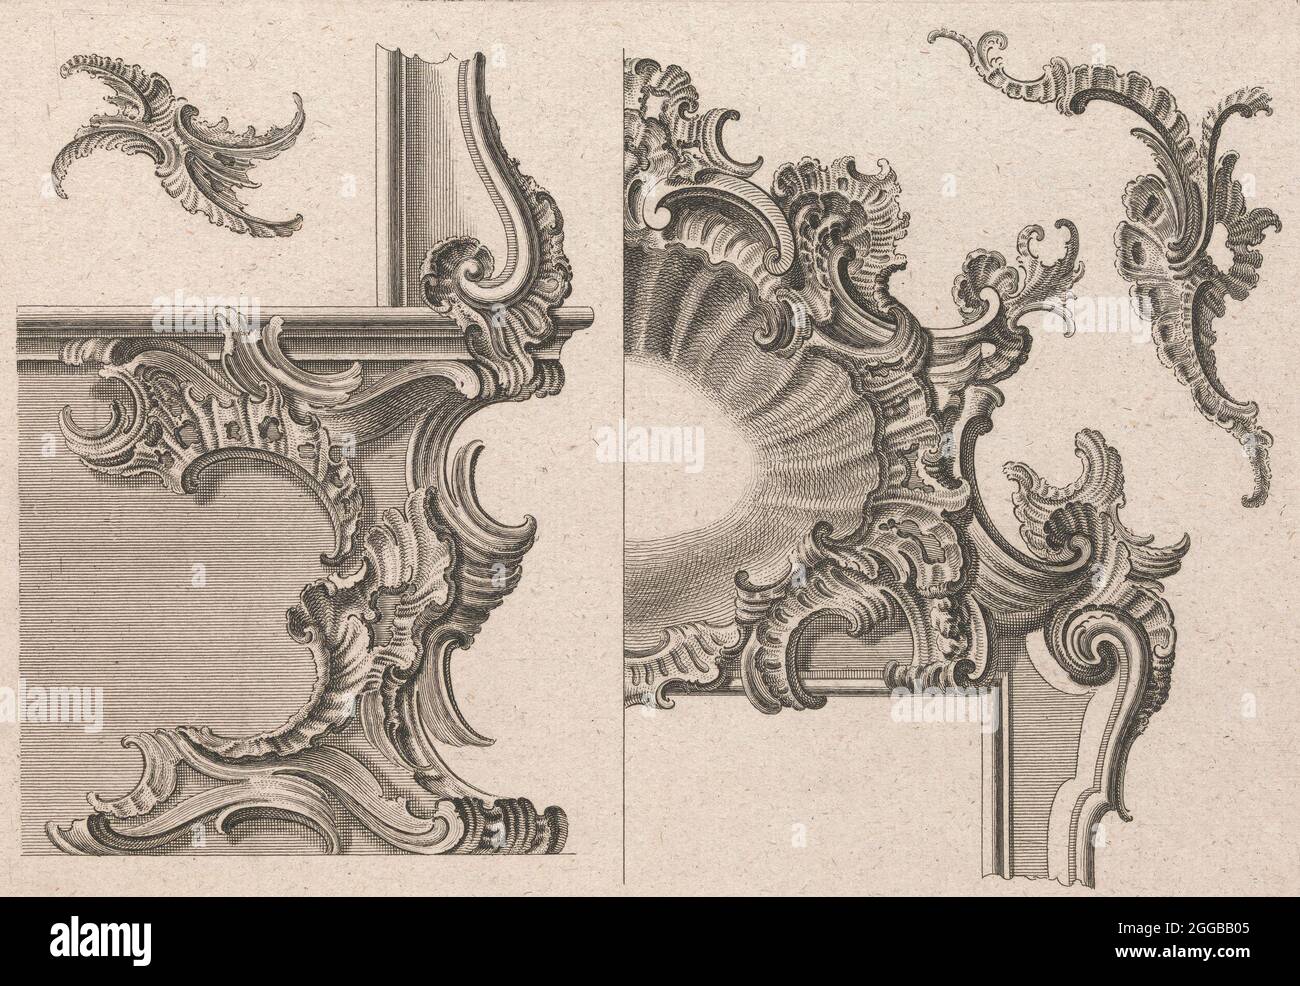 Vorschlag für die Dekoration von unten rechts und oben rechts eines Frames, Platte 3 aus einer Serie ohne Titel mit Rocailles-Ornamenten für Fenster-, Pier-Glas- und Türrahmen, gedruckt ca. 1750-56. Stockfoto